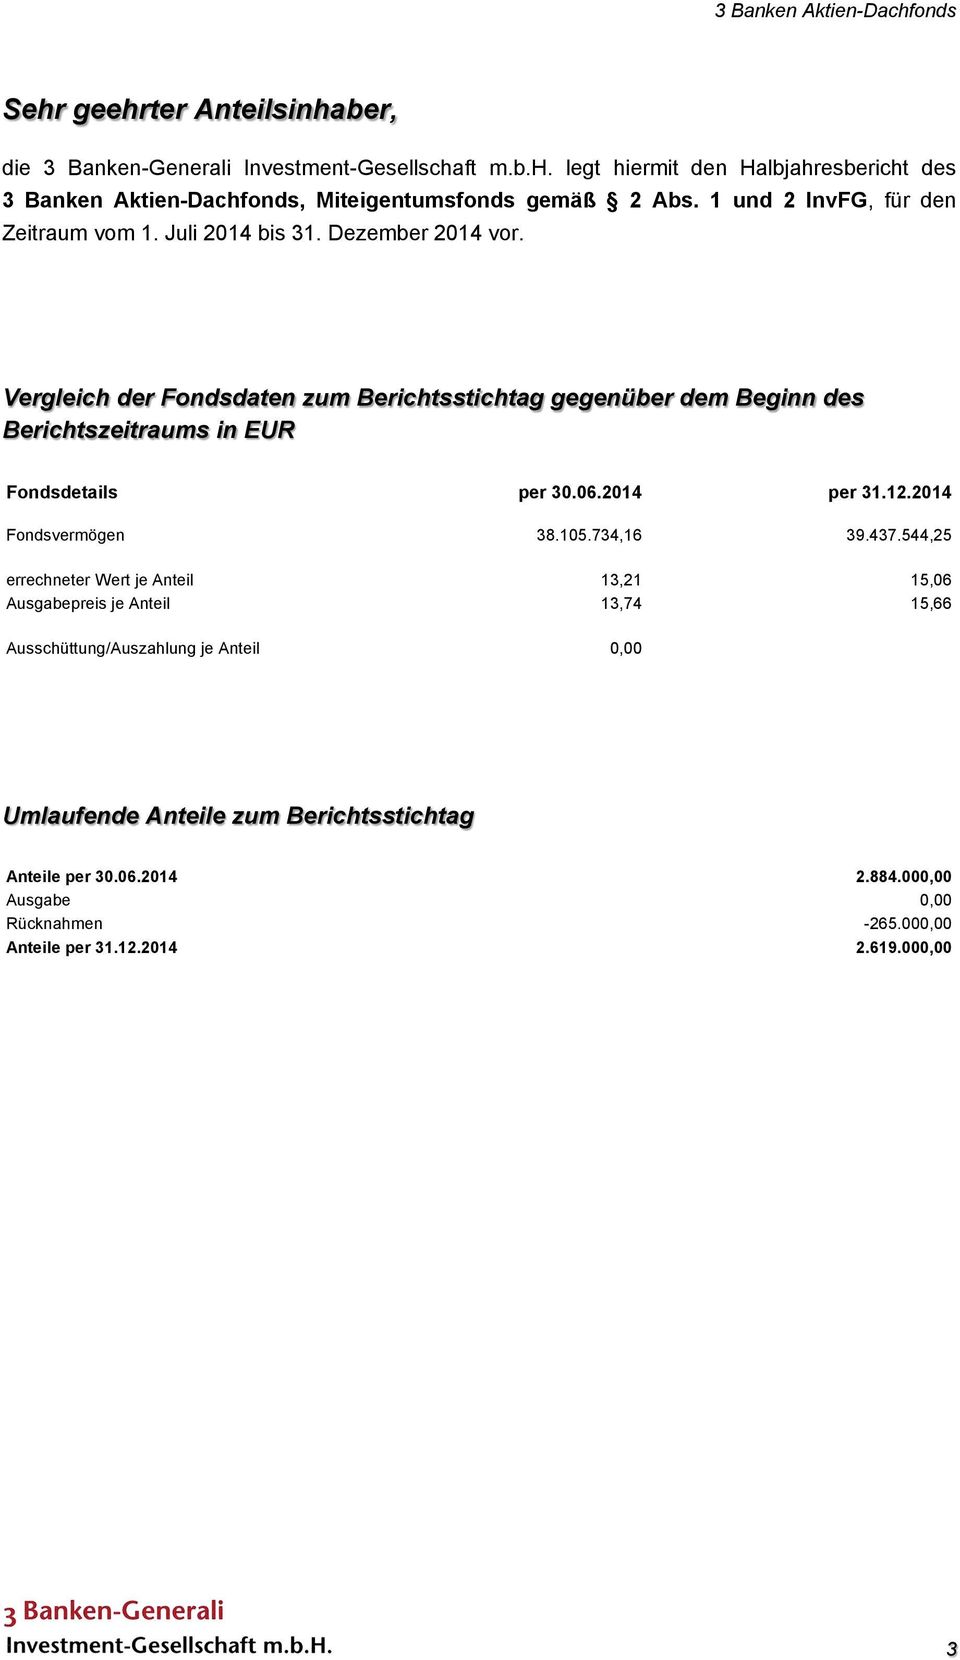 Vergleich der Fondsdaten zum Berichtsstichtag gegenüber dem Beginn des Berichtszeitraums in EUR Fondsdetails per 30.06.2014 per 31.12.2014 Fondsvermögen 38.105.734,16 39.437.